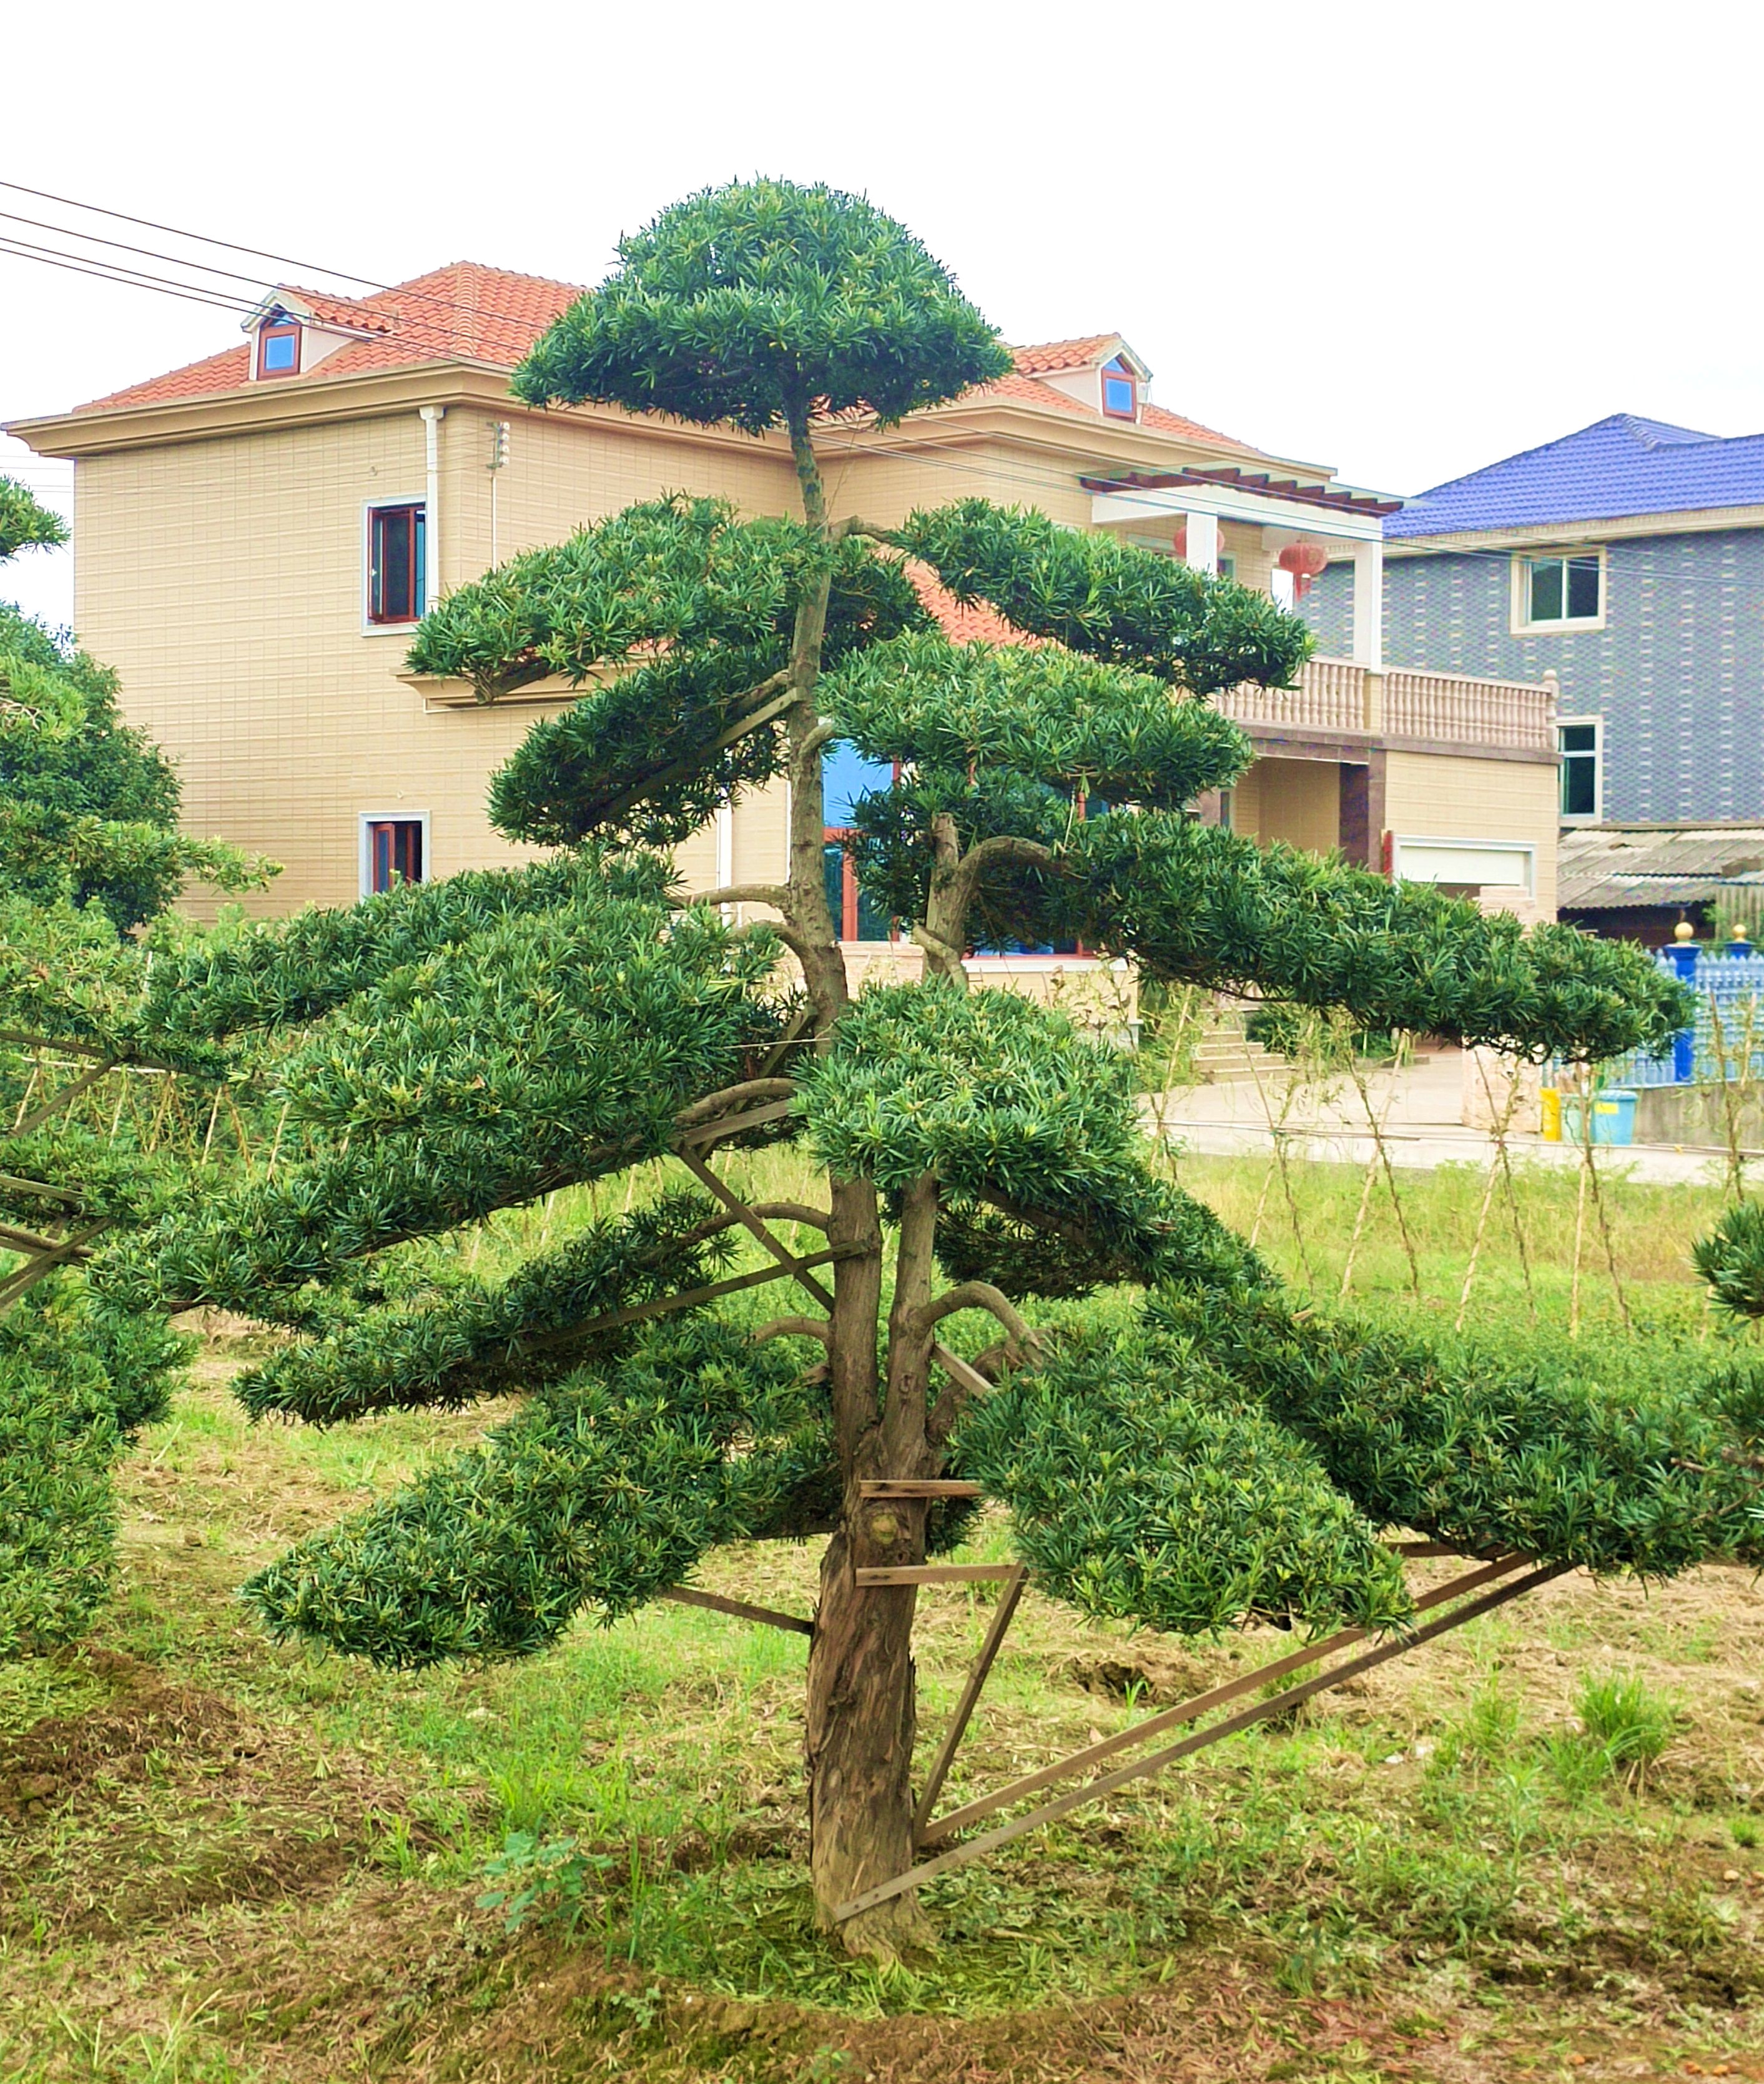 日本罗汉松价格 造型罗汉松批发 - 花木网